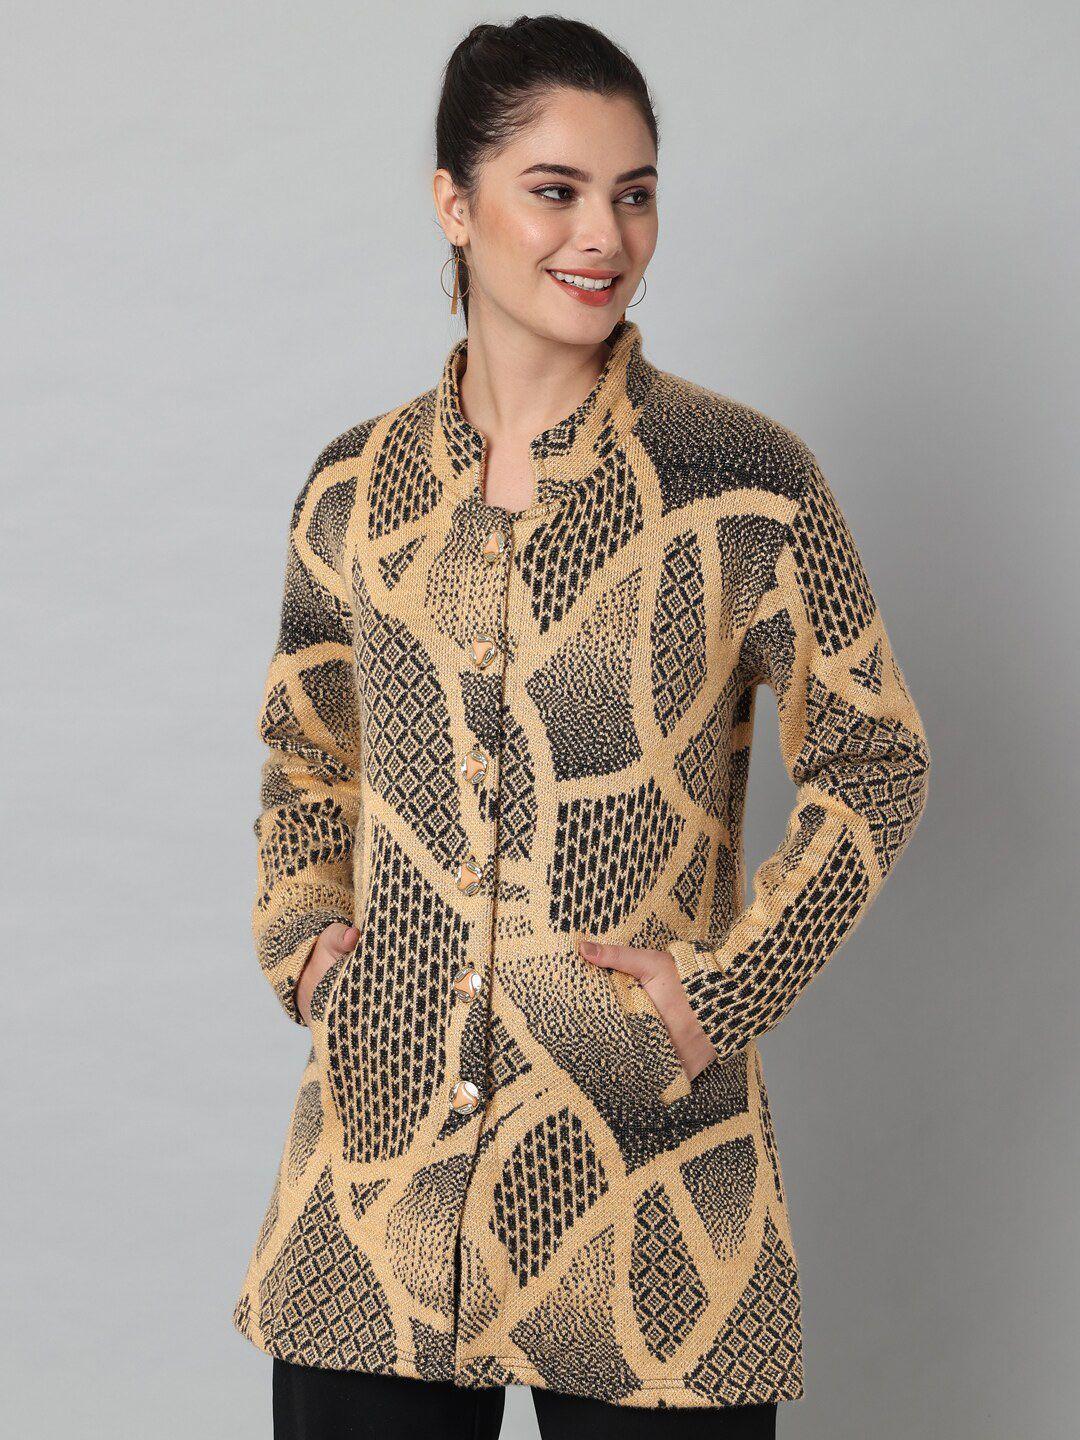 ewools geometric printed mandarin collar acrylic wool longline cardigan sweater